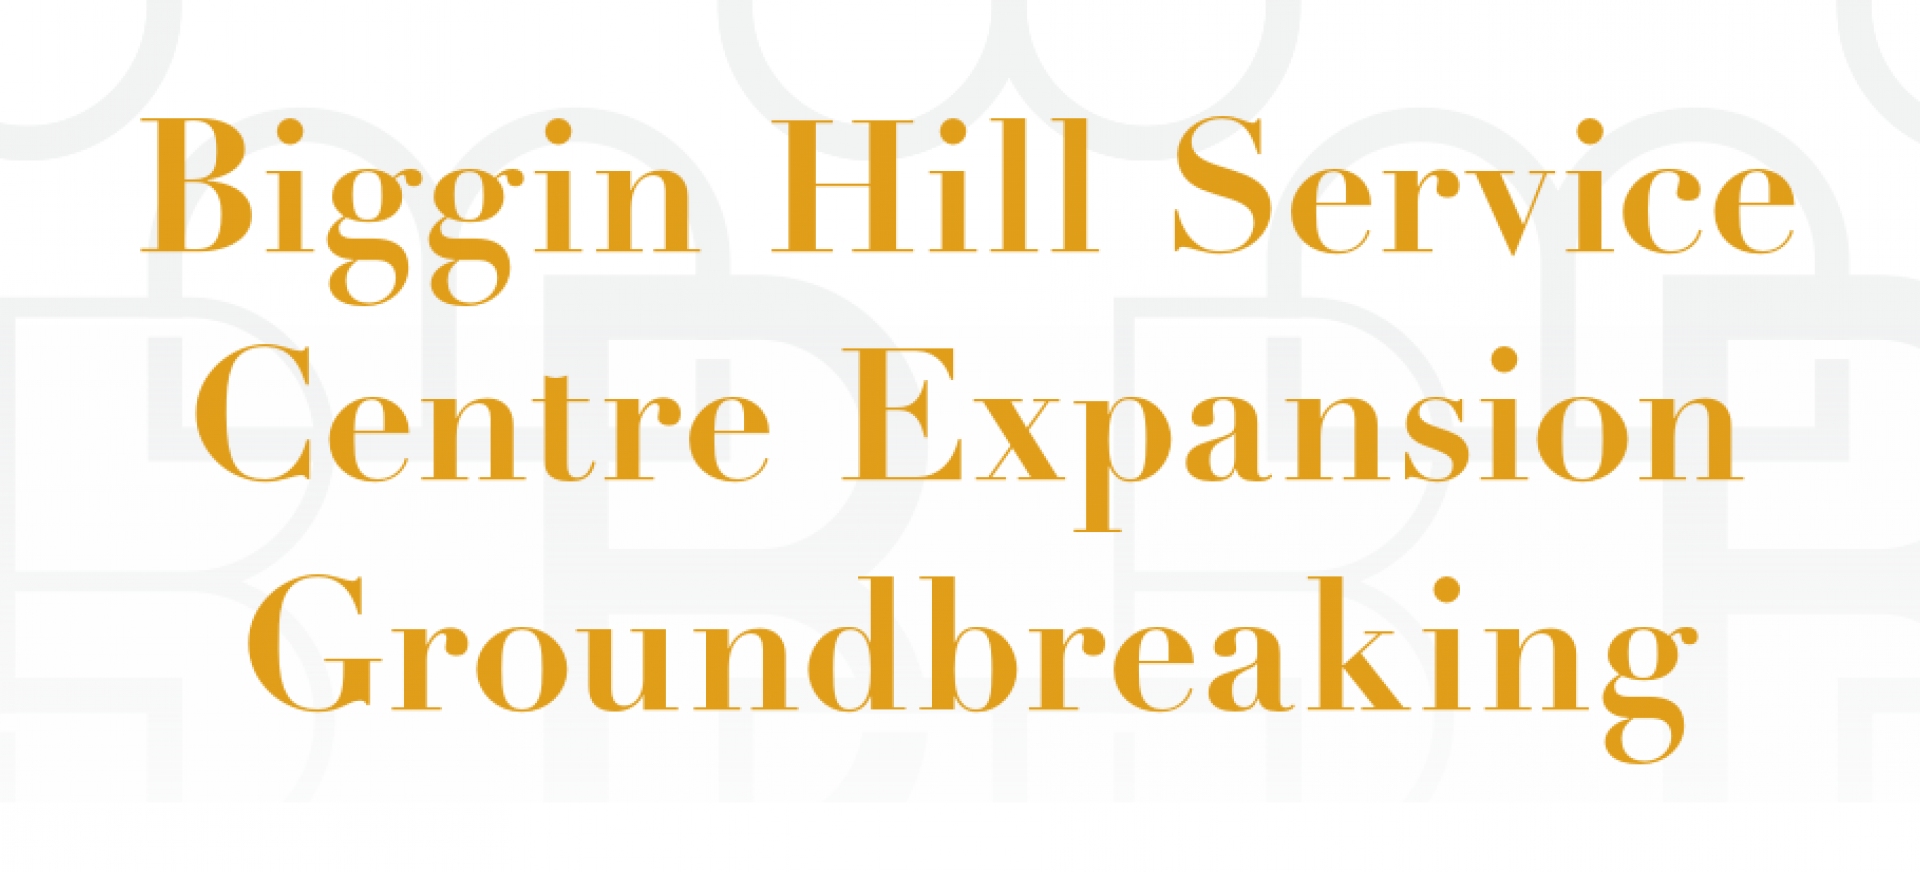 Biggin Hill Service Centre Expansion Groundbreaking